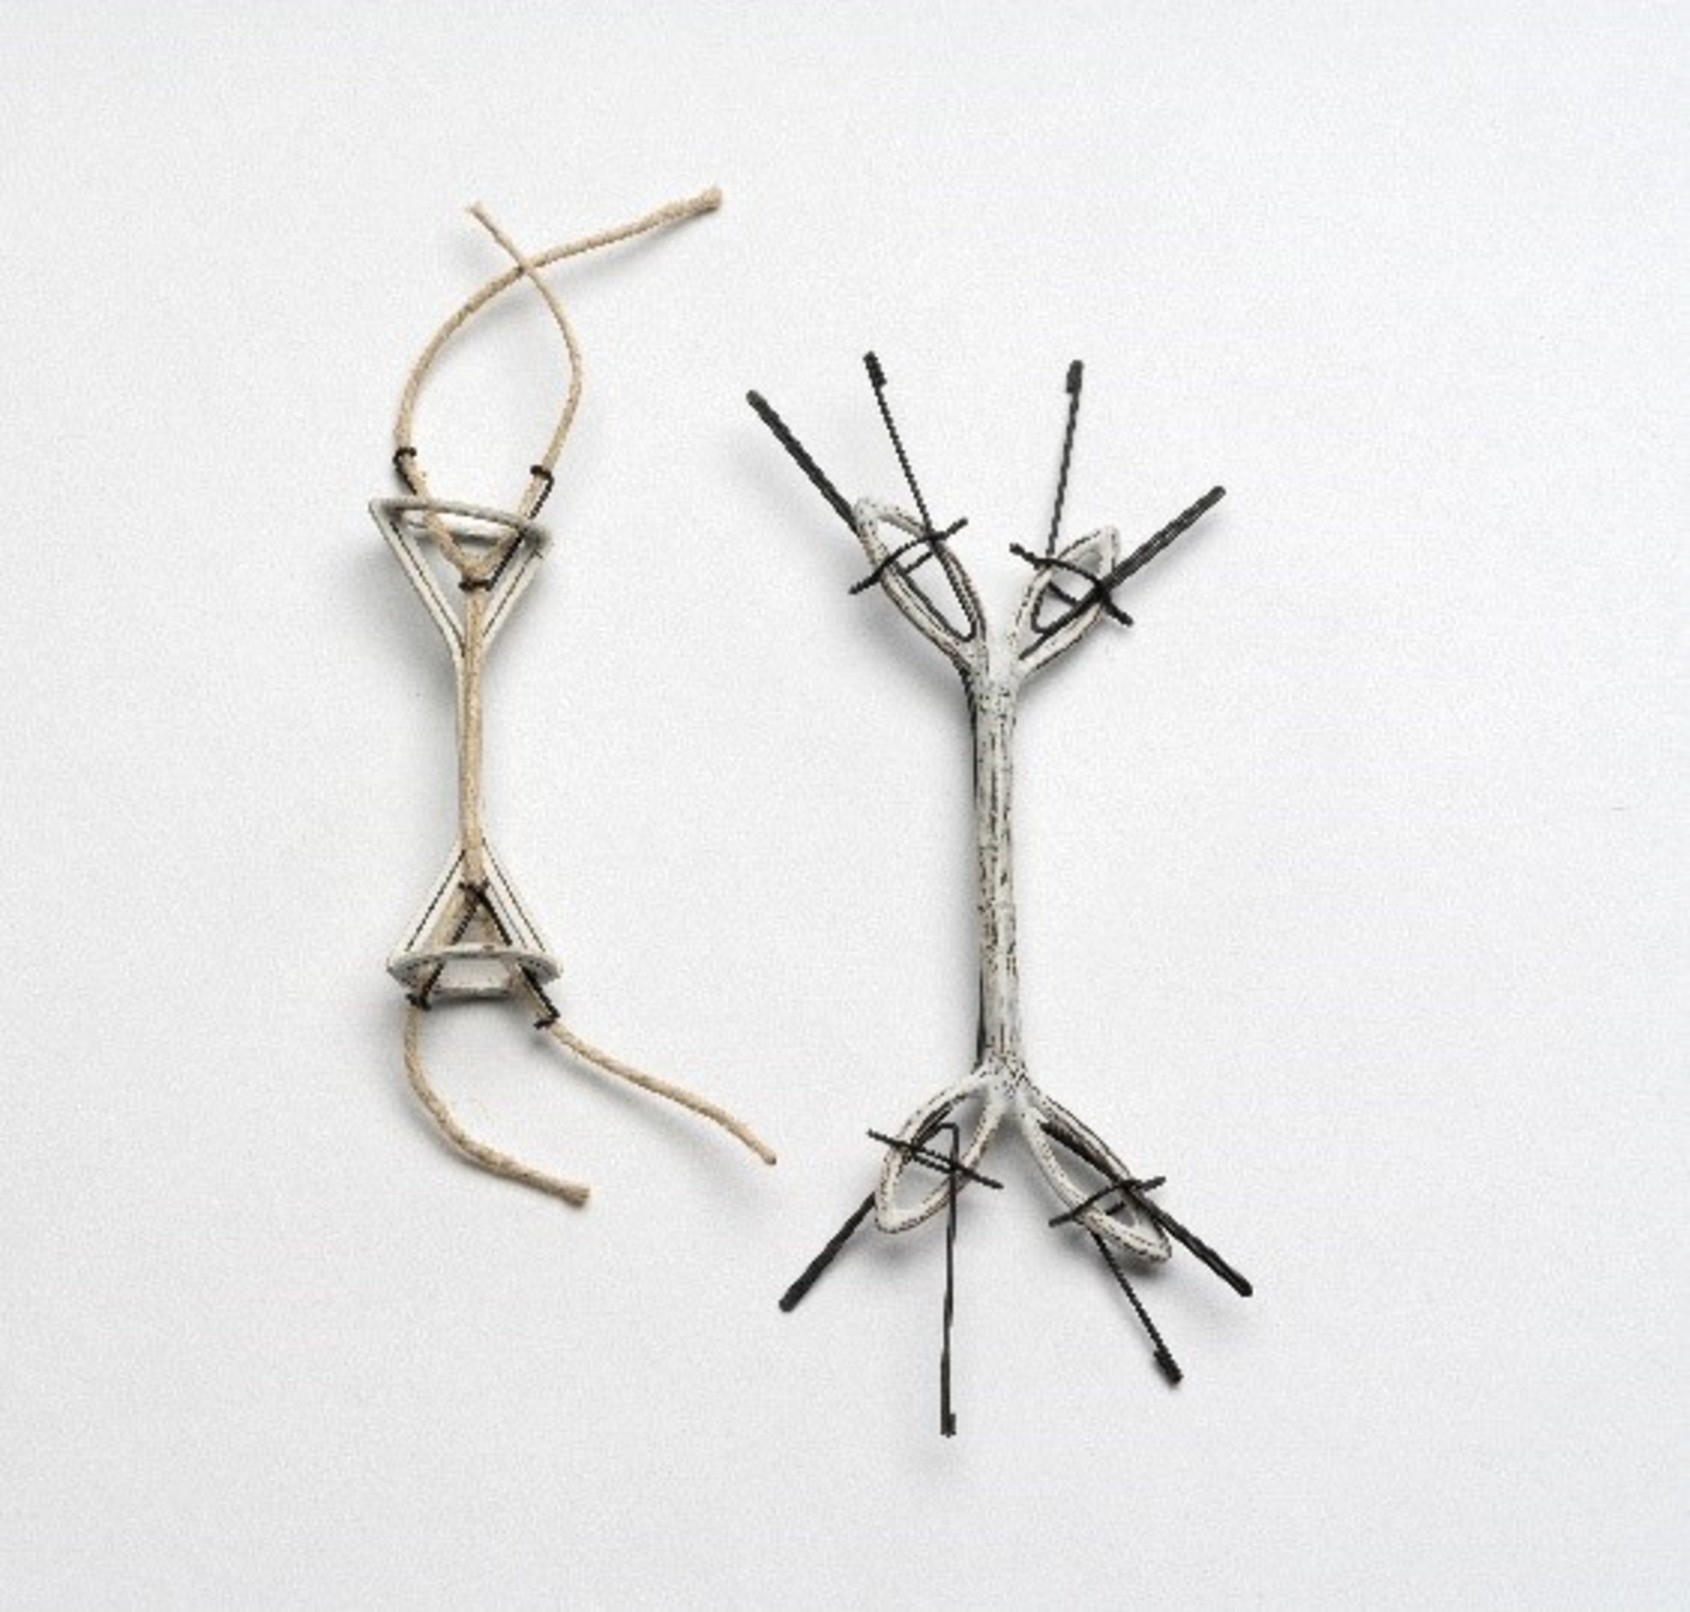 Object, plywood, string, mild steel wire  2010, 8x5x2.5cm by Franz Bette ©ALIEN ART 